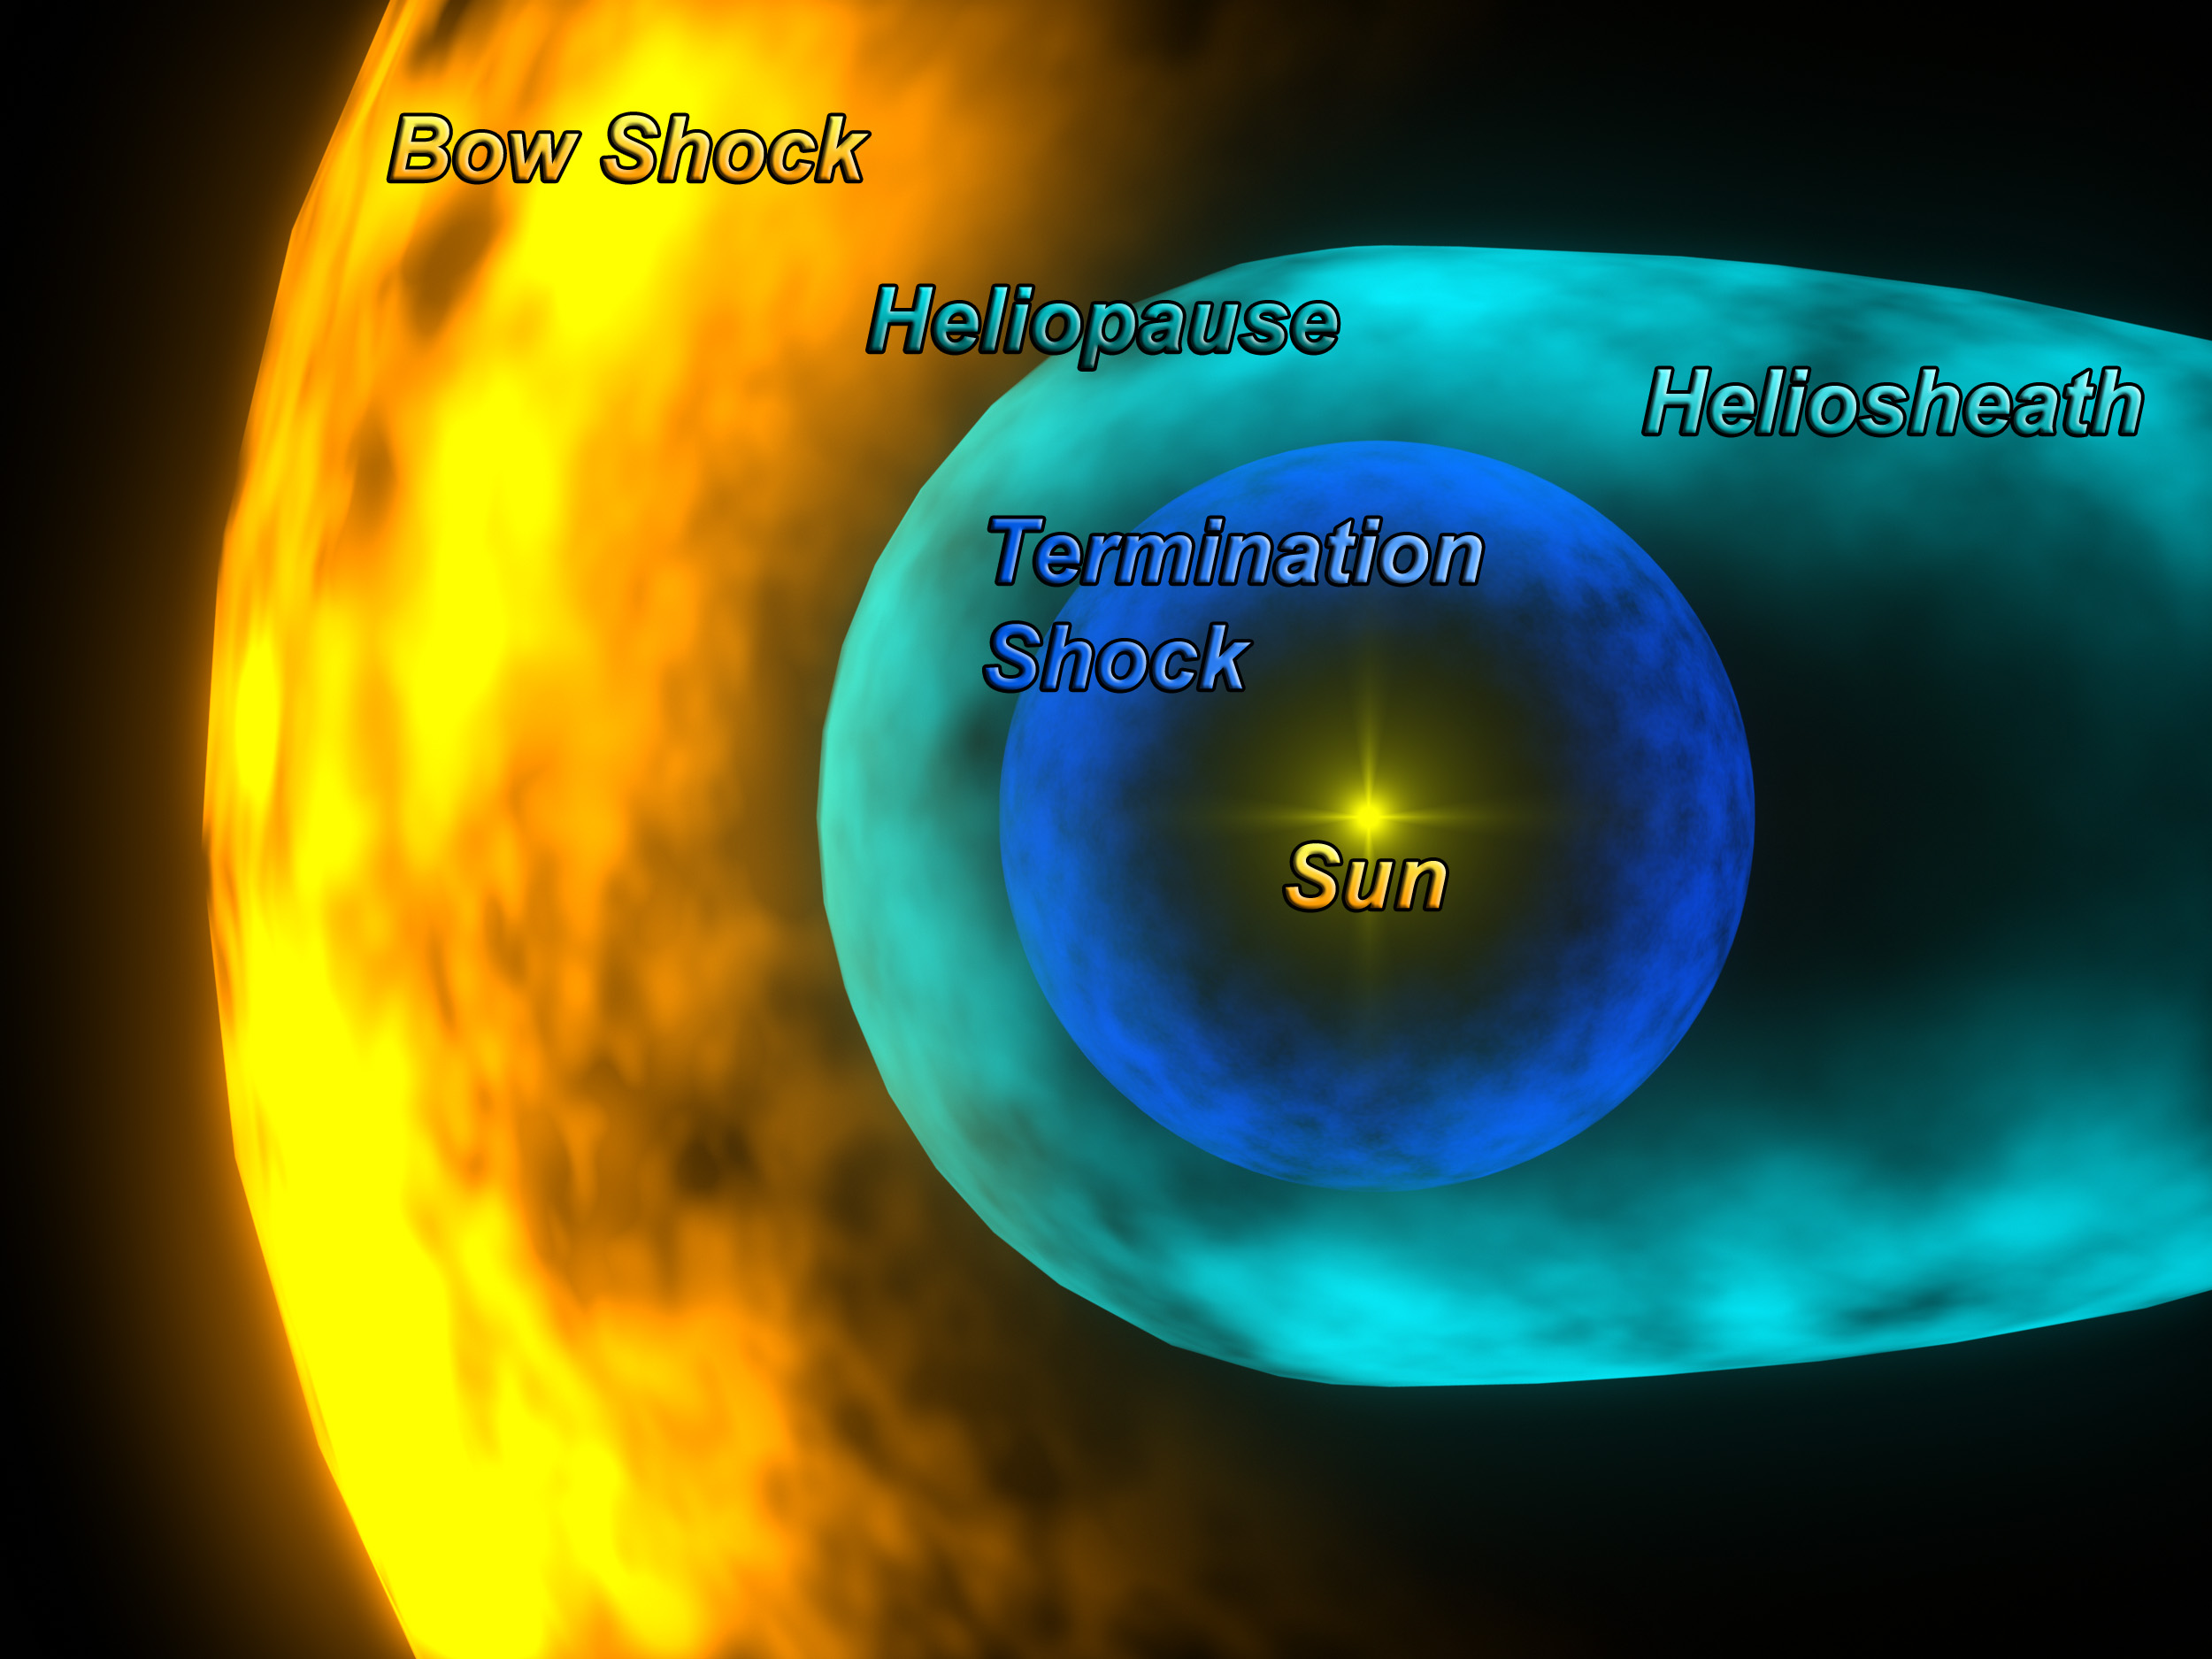 ESA - The heliosphere